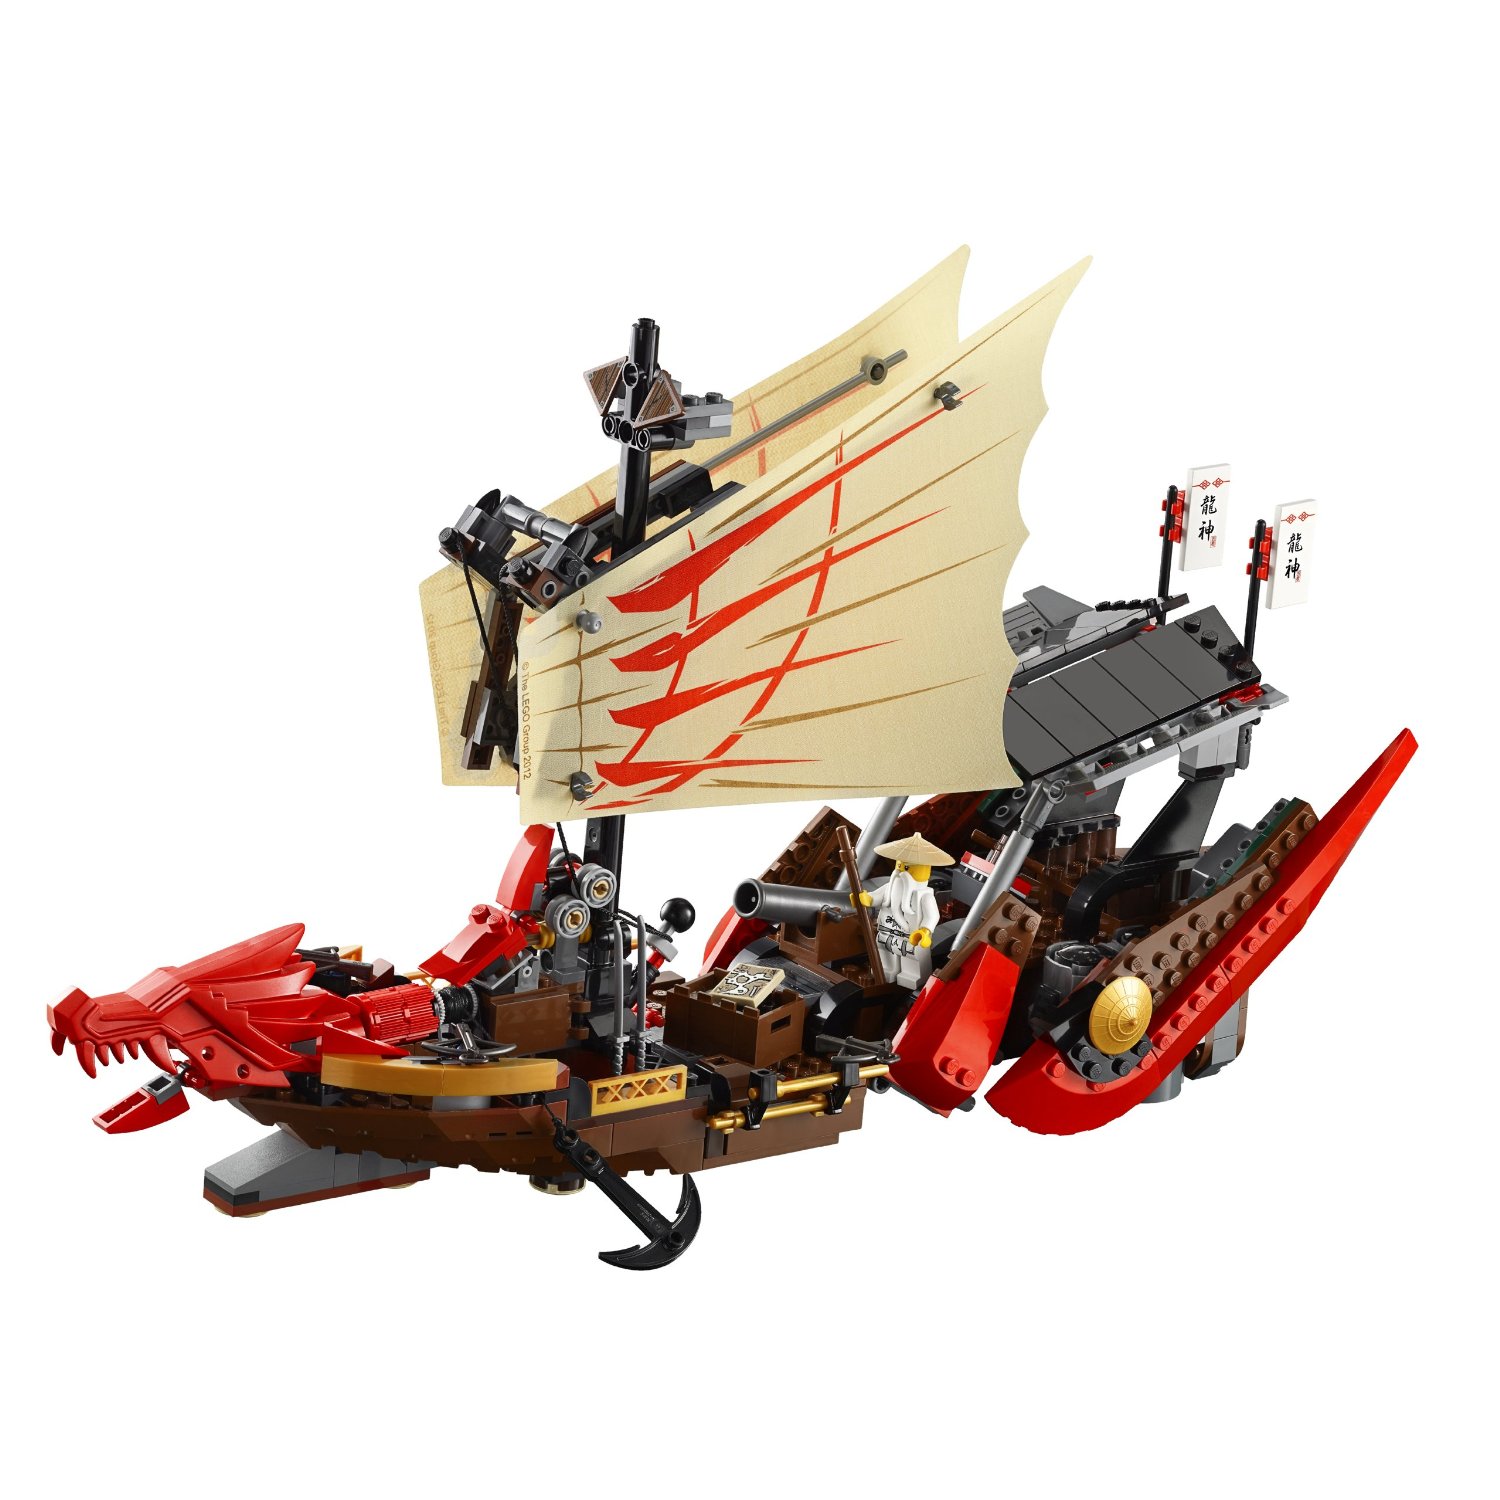 LEGO Ninjago Destiny's Bounty 9446